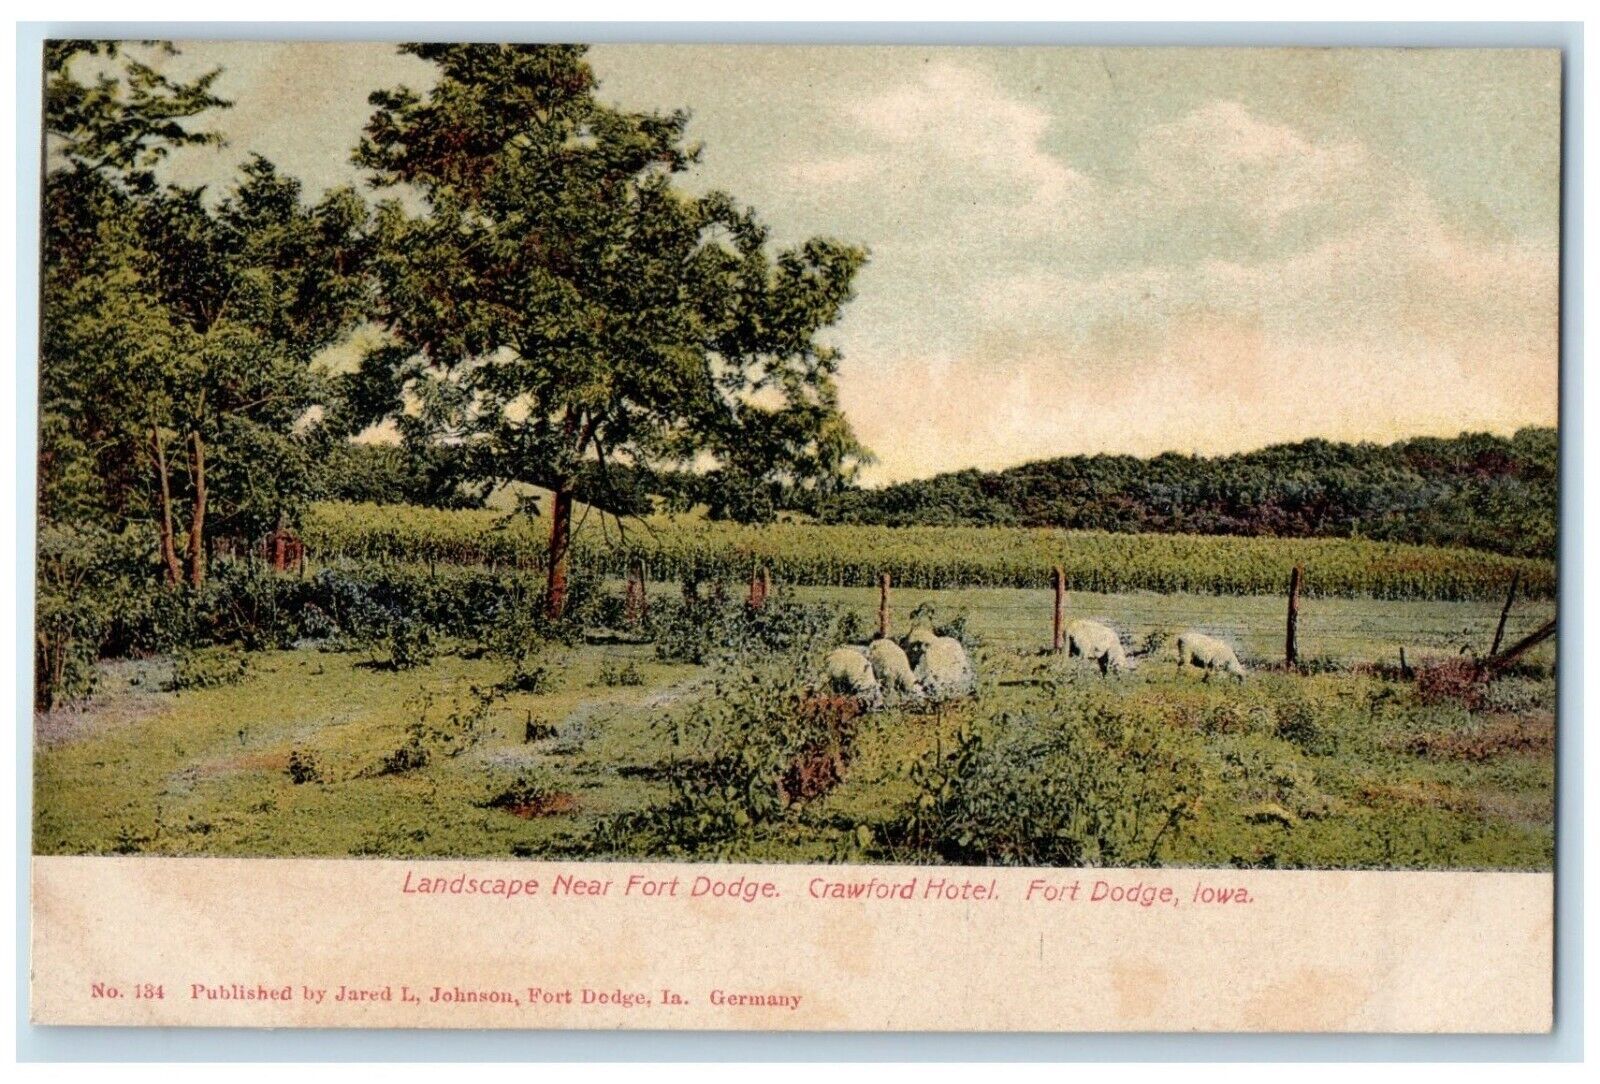 c1905 Landscape Near Fort Dodge Crawford Hotel Fort Dodge Iowa Vintage Postcard